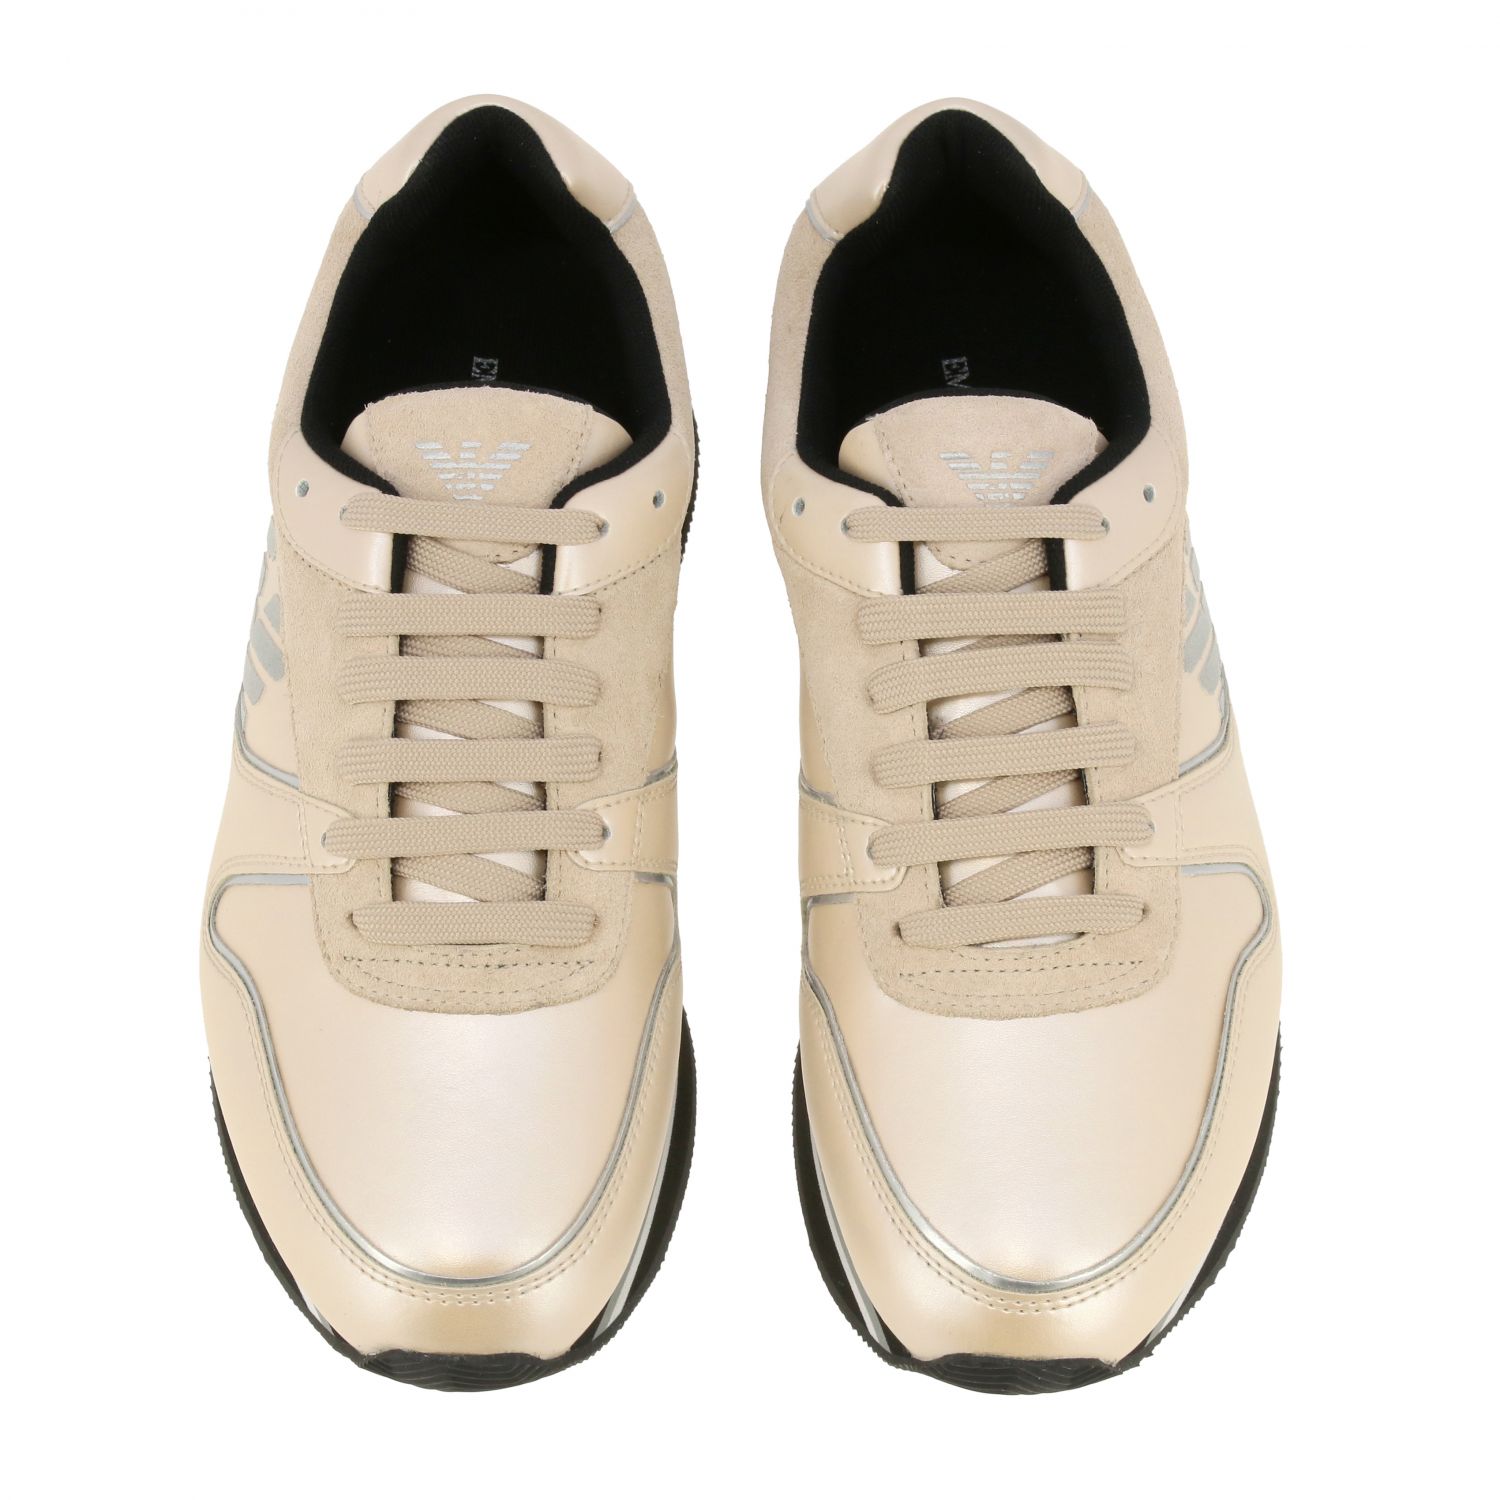 Emporio Armani Outlet: sneakers for women - White | Emporio Armani ...